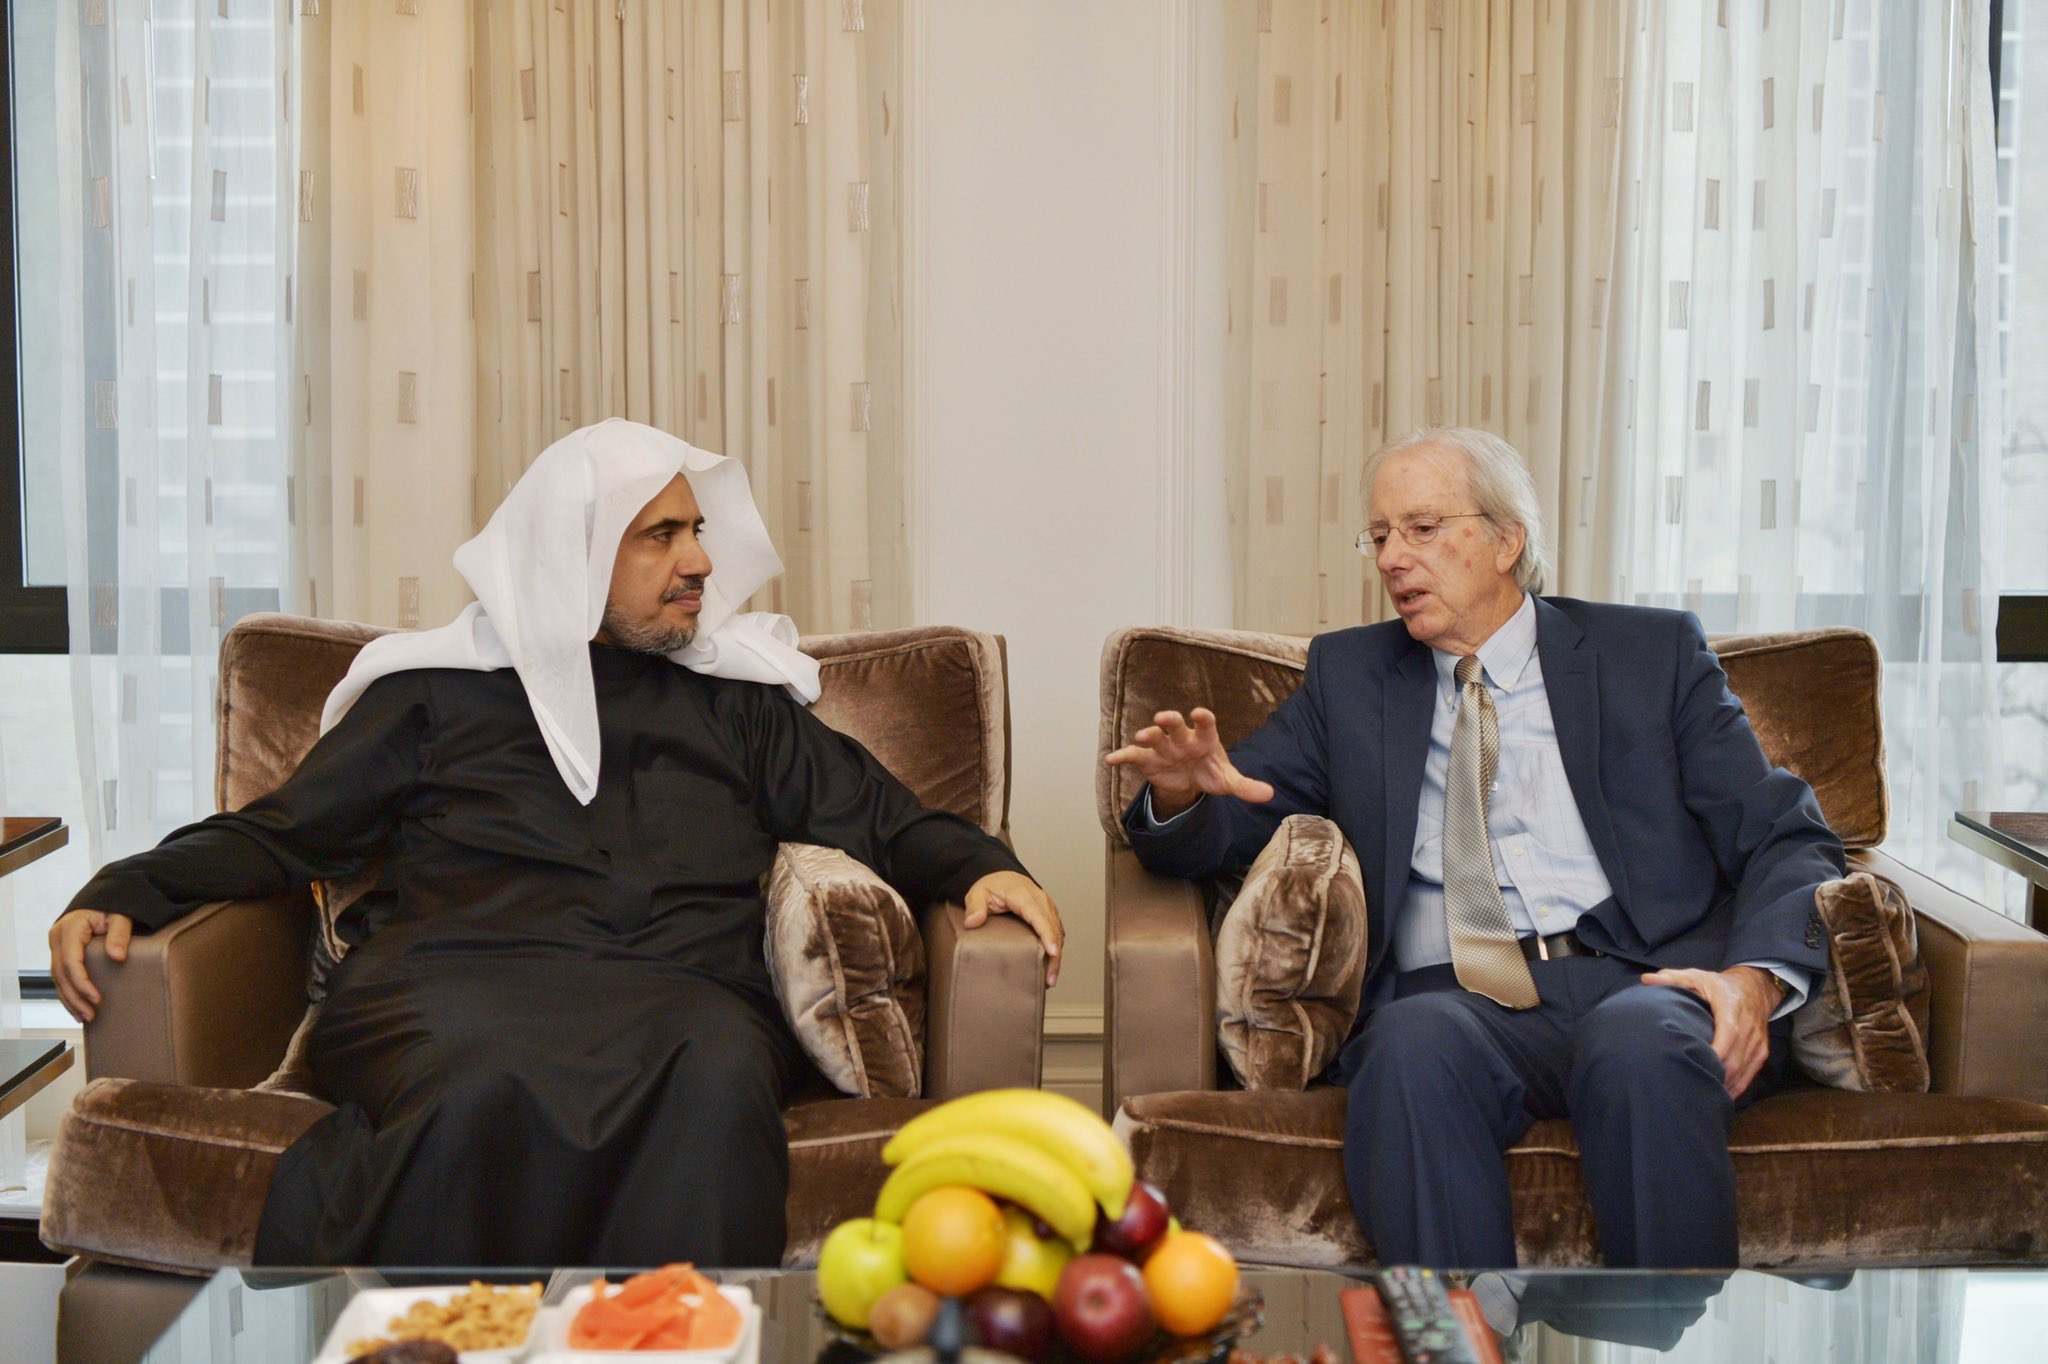 عزت مآب ڈاکٹر محمد العيسى نے واشنگٹن میں عالمی ماہر اور مشیر واشنگٹن انسیٹیوٹ ڈینس روس سے ملاقات کی